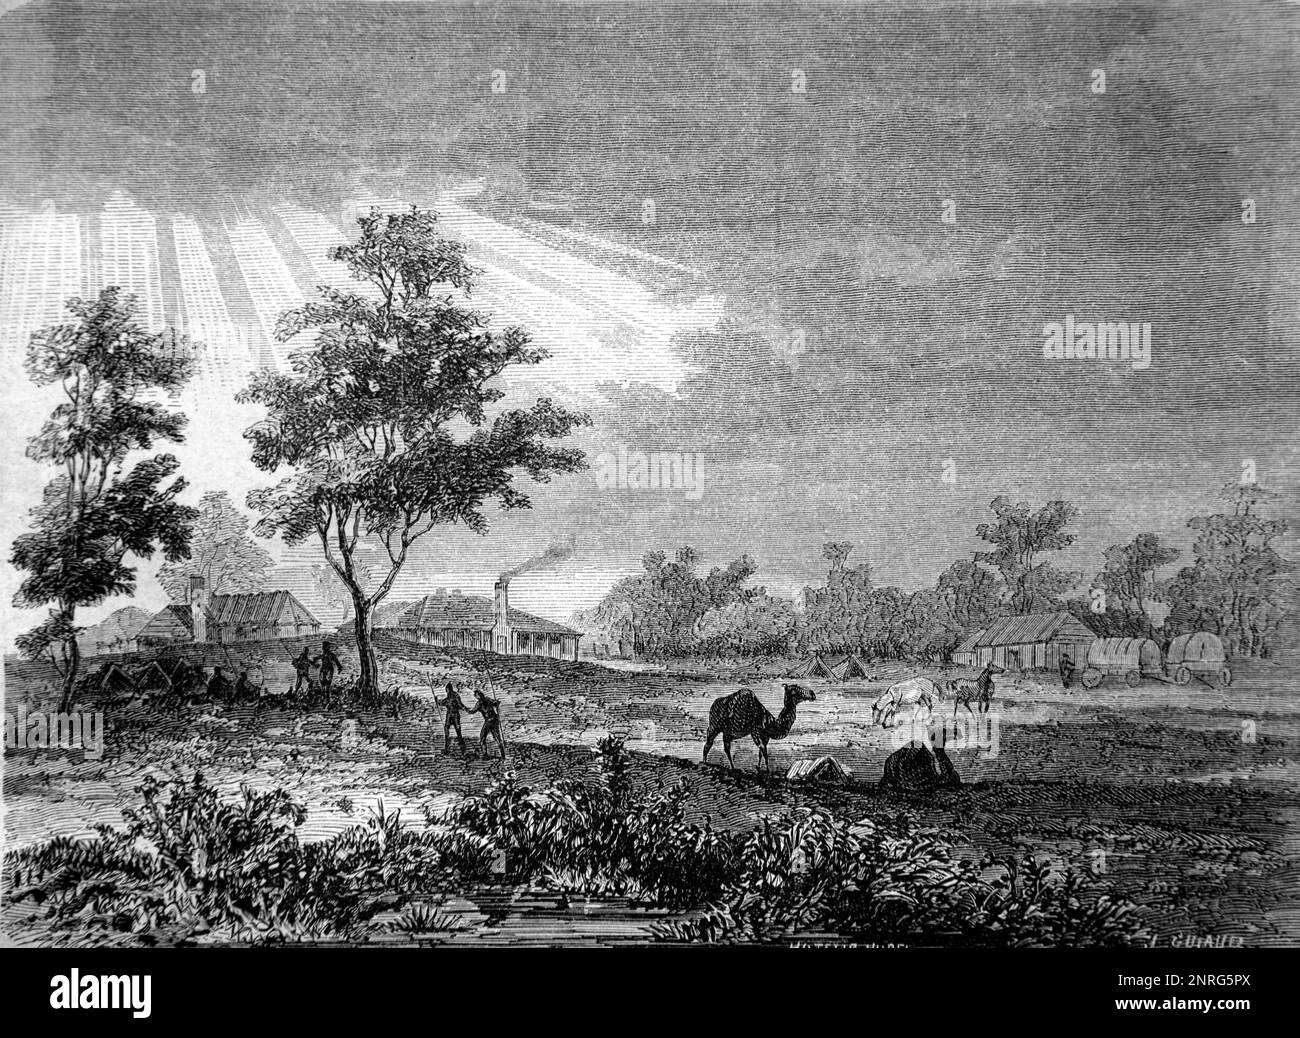 Meninne Farm, alias Menindie, sur la rivière Darling, Nouvelle-Galles du Sud Australie. Gravure ancienne ou illustration 1862 Banque D'Images